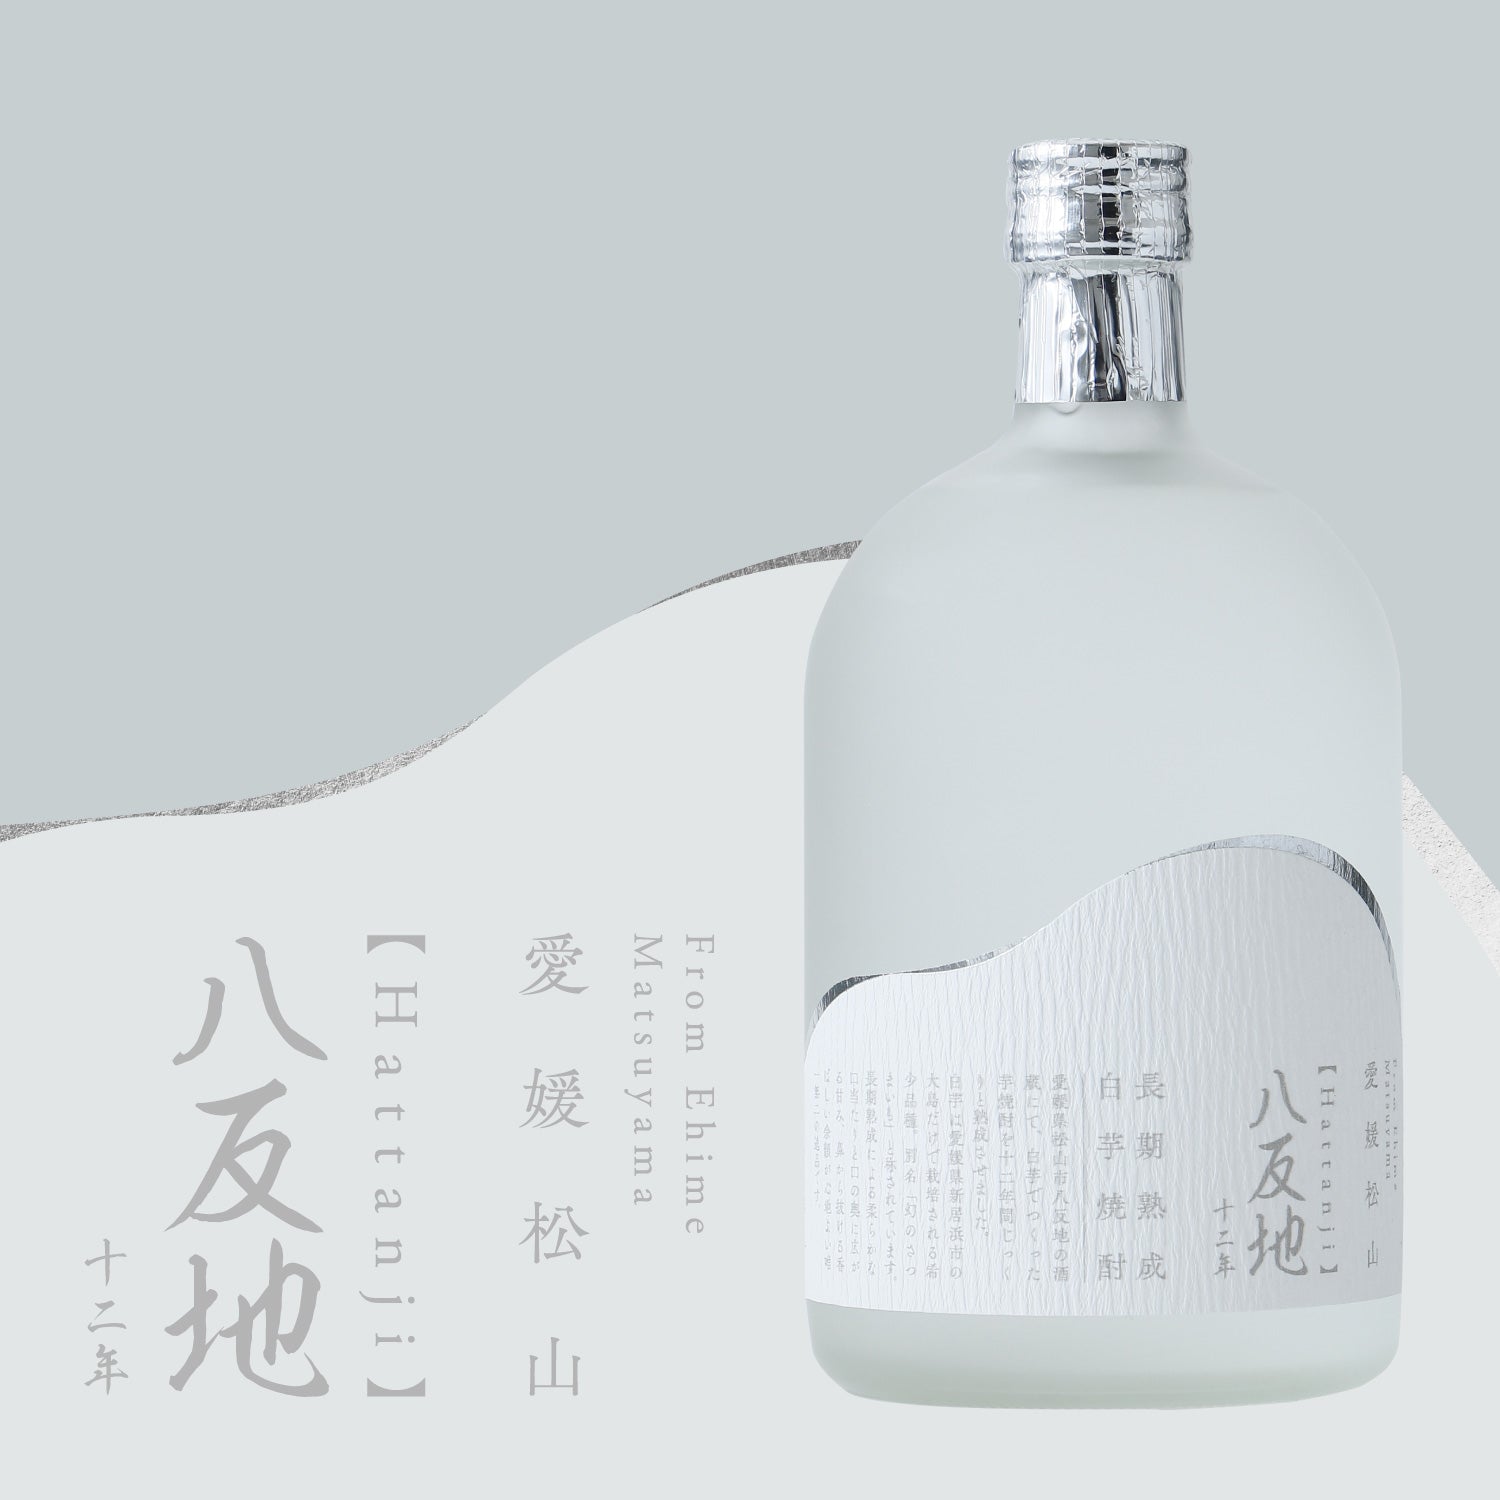 八反地 12年 | 愛媛県の焼酎 | 酒・日本酒の通販ならKURAND（クランド）